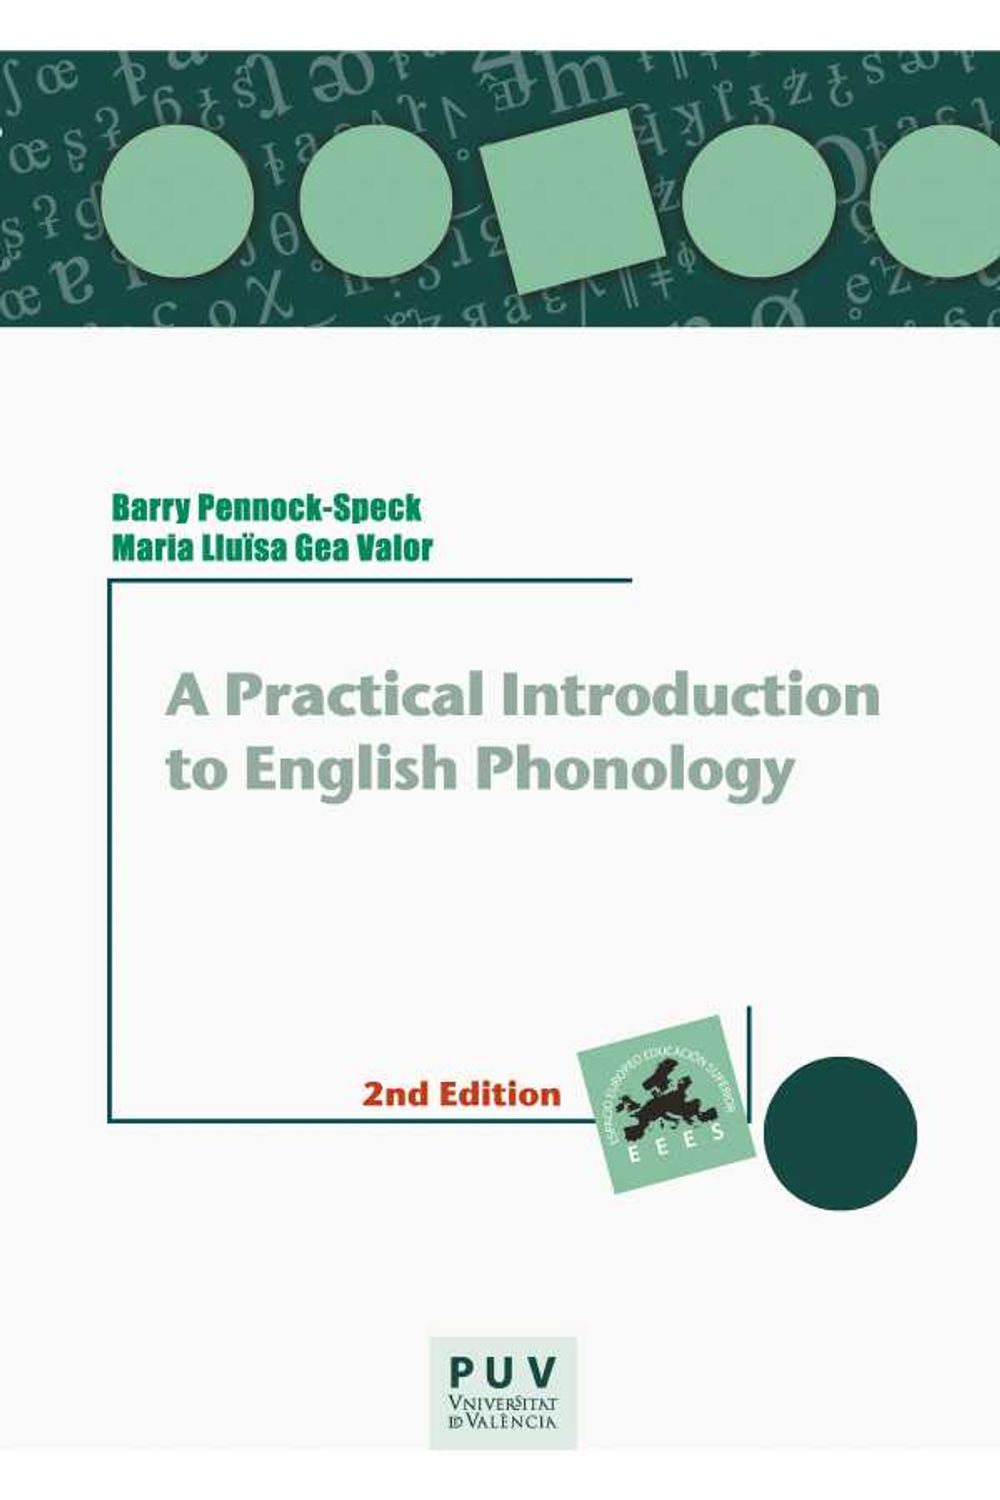 bw-a-practical-introduction-to-english-phonology-2nd-edition-publicacions-de-la-universitat-de-valncia-9788491346005